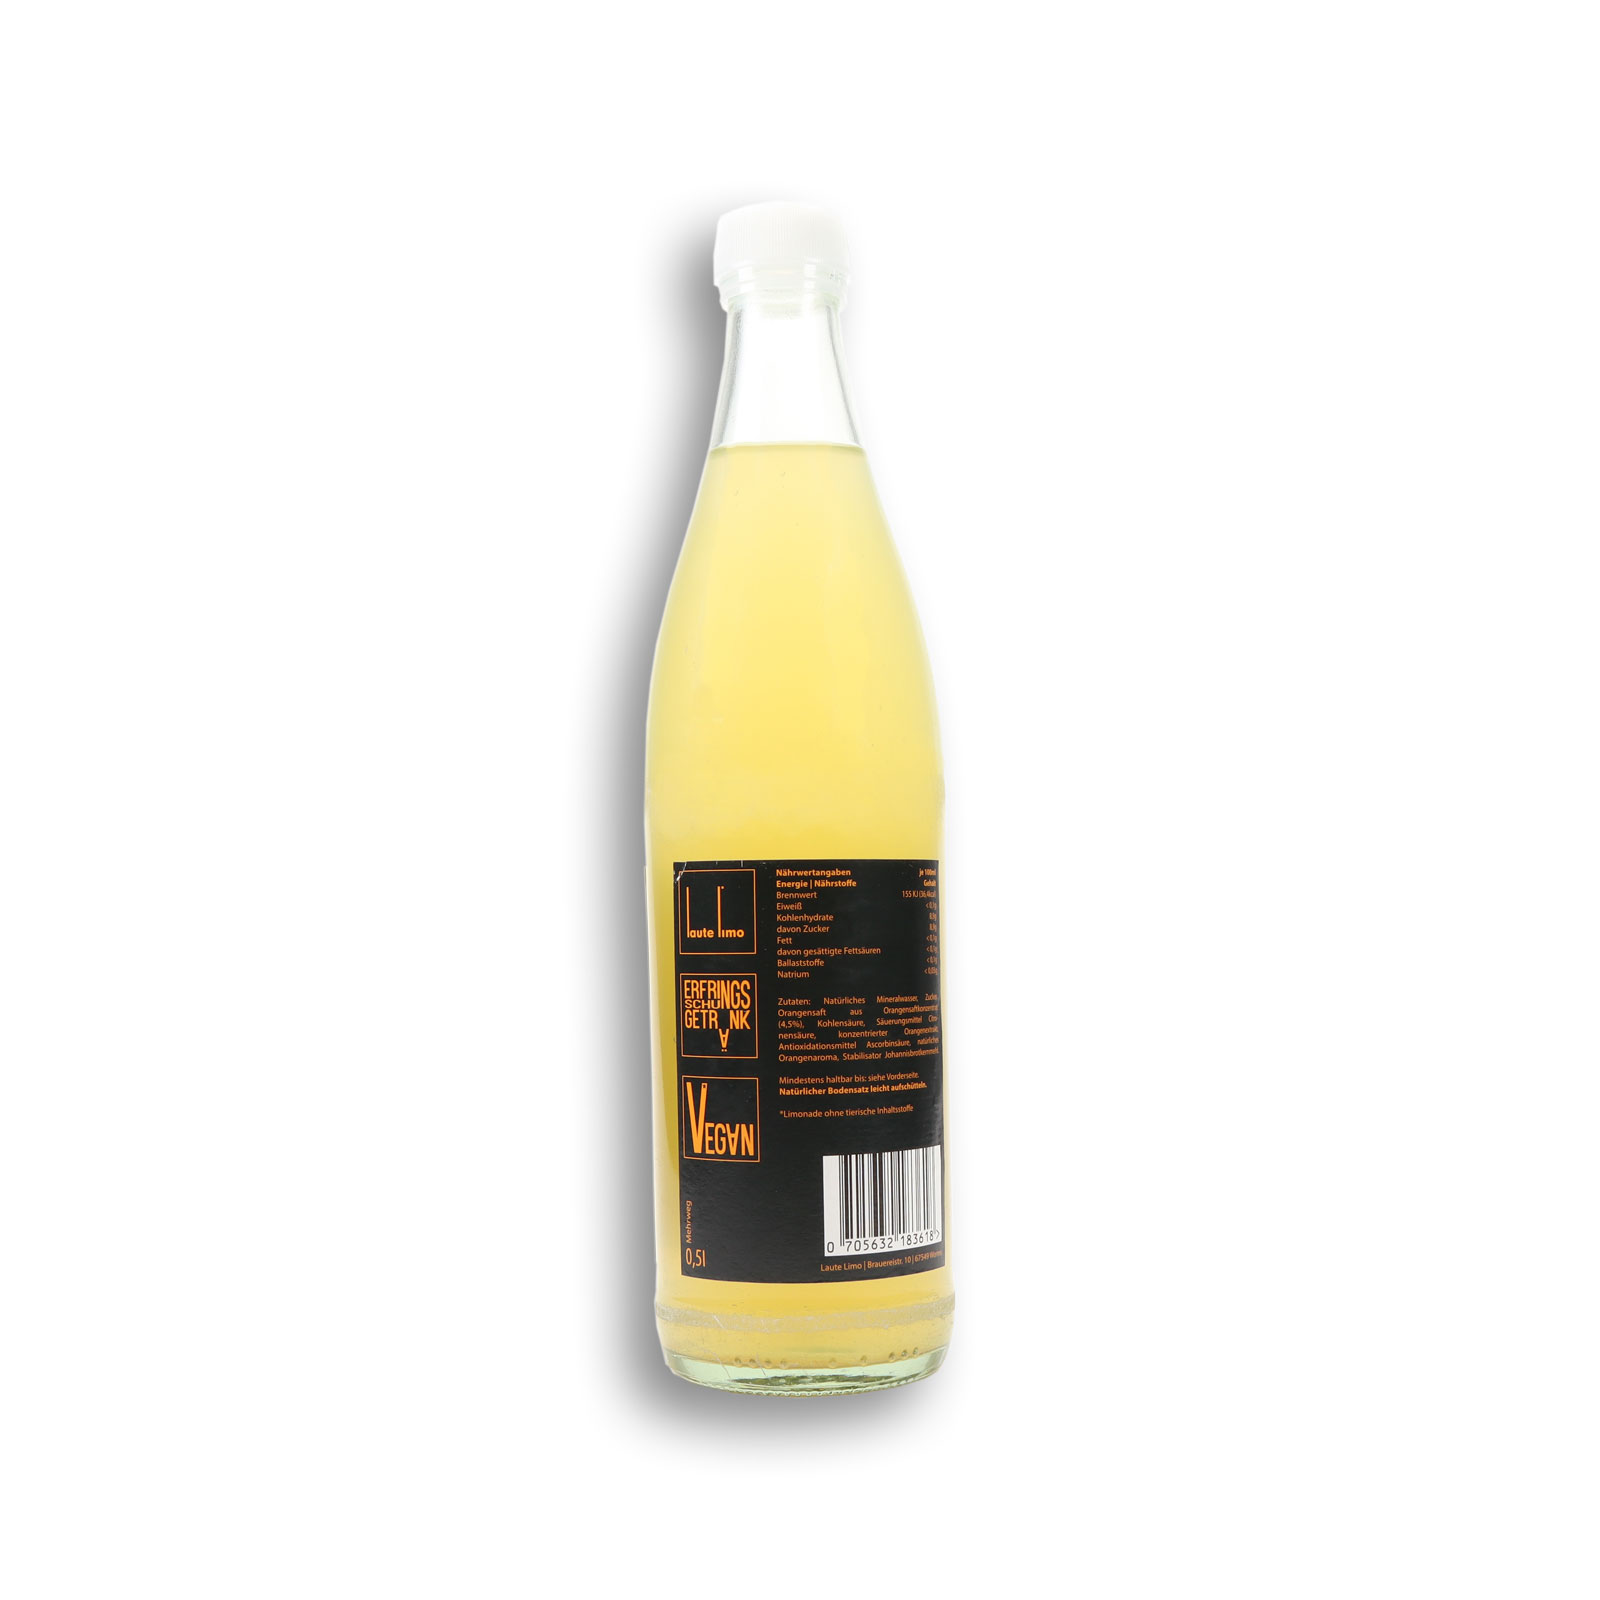 Label der Orangenlimonade mit detaillierten Herstellernangeben über das Produkt.